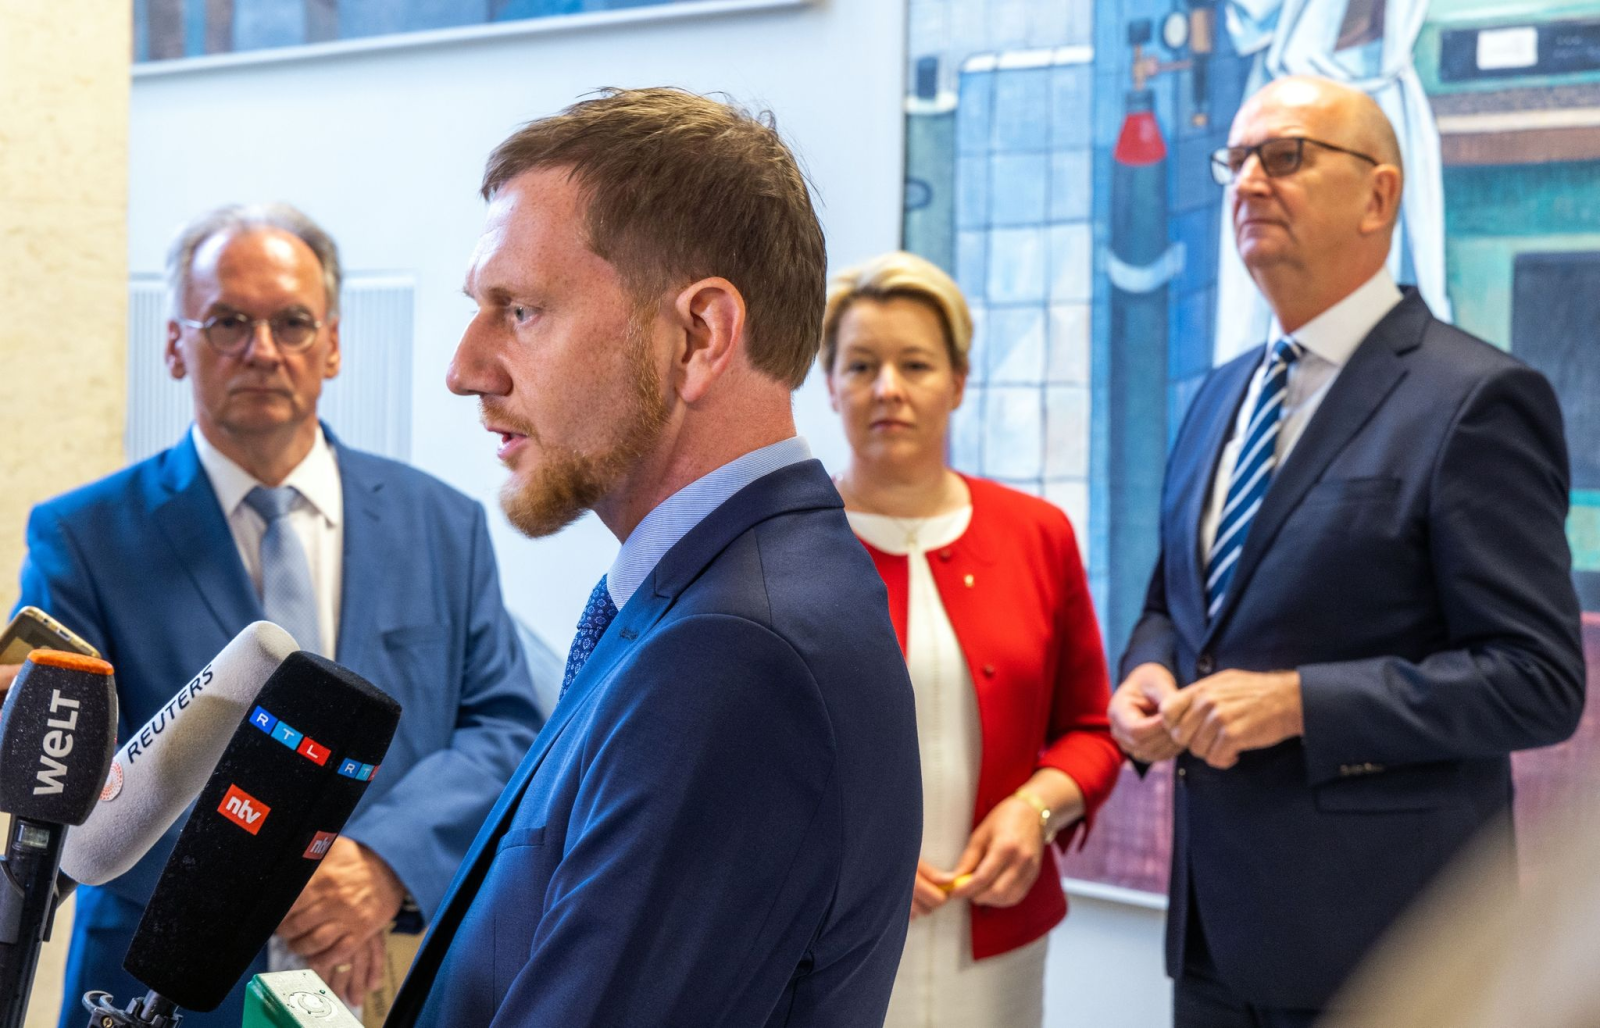 Michael Kretschmer (CDU), Ministerpräsident von Sachsen, spricht mit Medienvertretern.